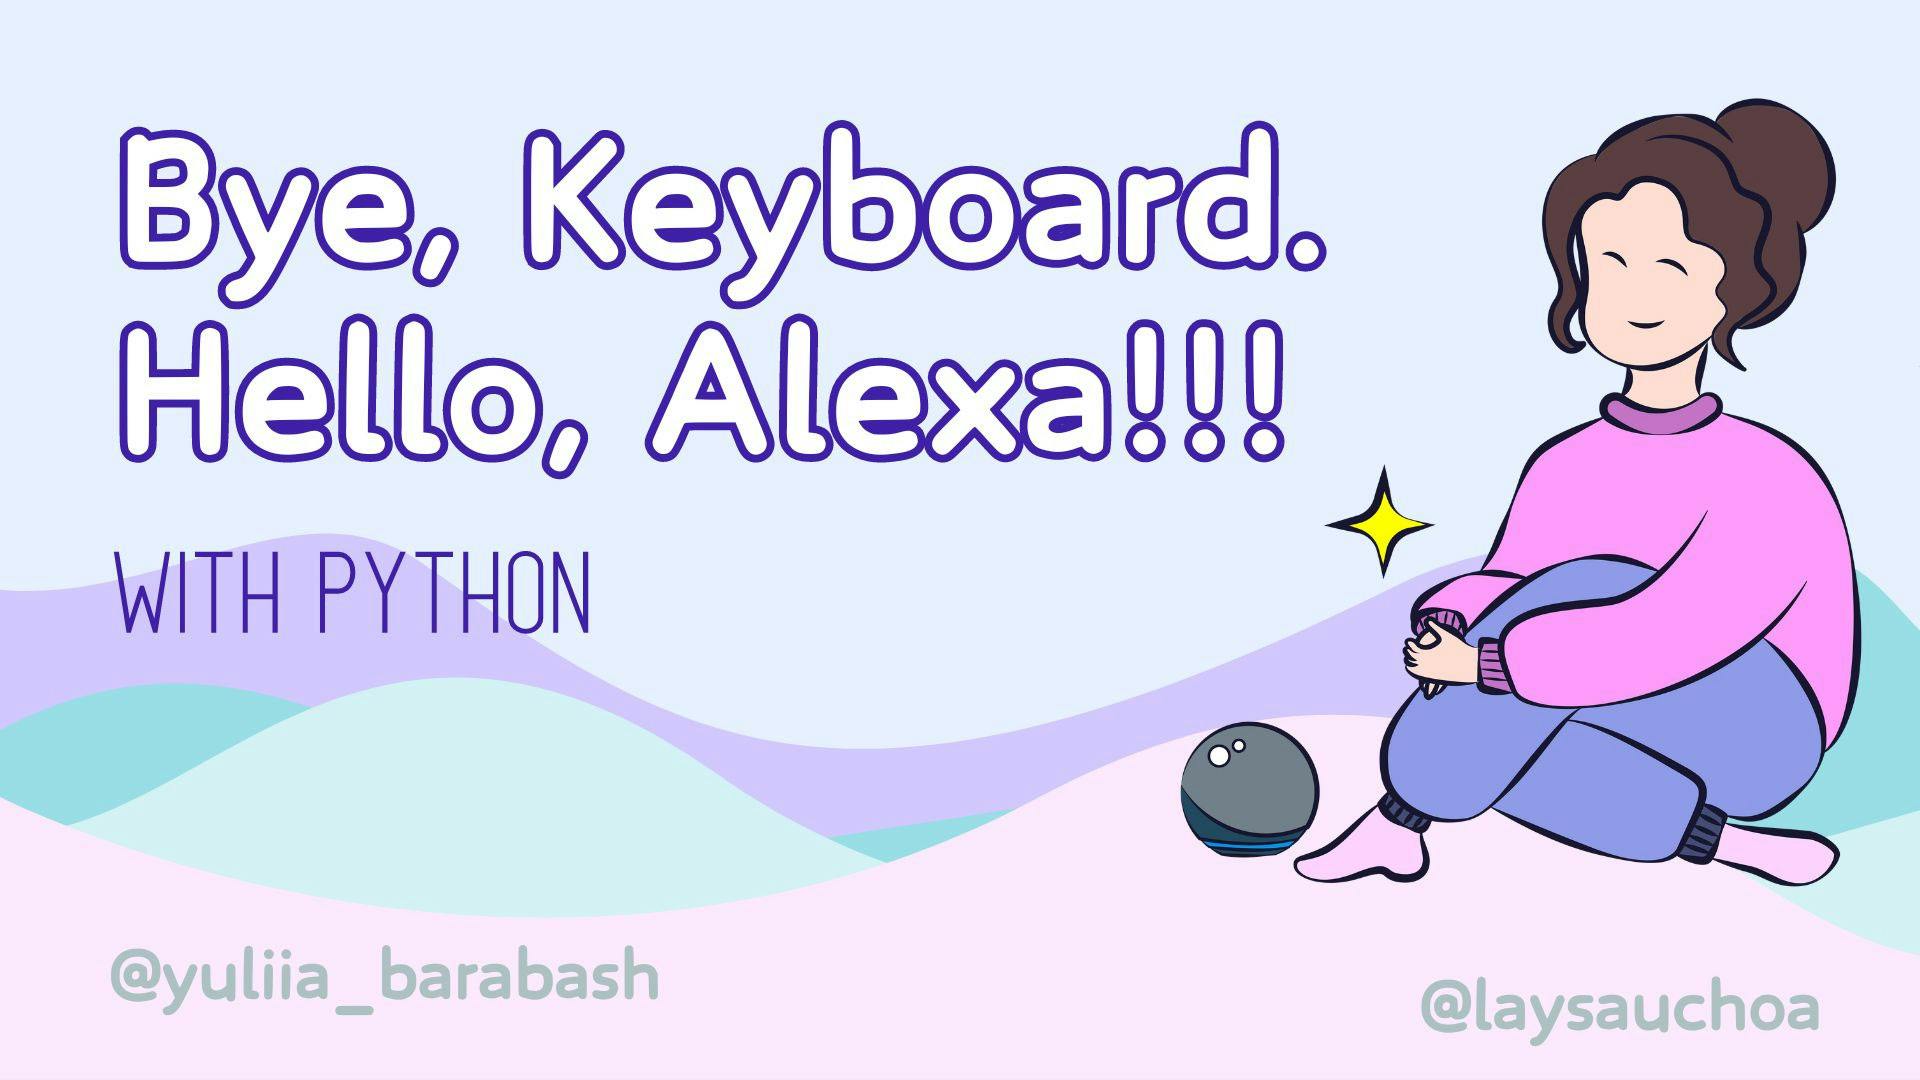 Saying bye to the Keyboard, Hello to Alexa with Python AWS Lambda